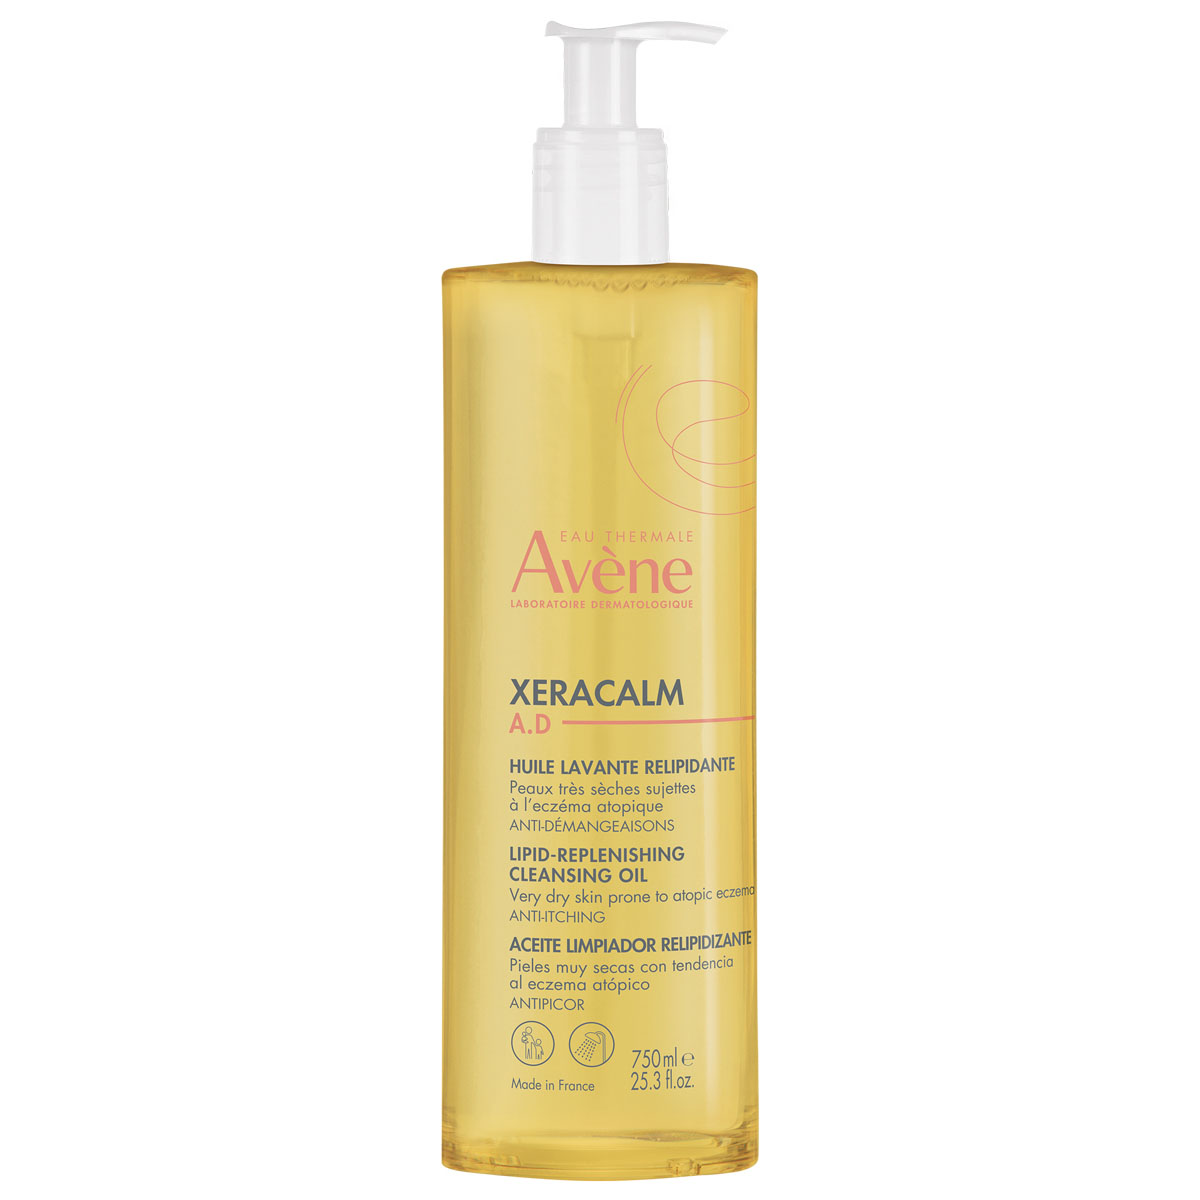 Avene Очищающее масло для очень сухой и атопичной кожи лица и тела, 750 мл (Avene, XeraCalm) avene очищающее масло для лица и тела 400 мл avene xeracalm